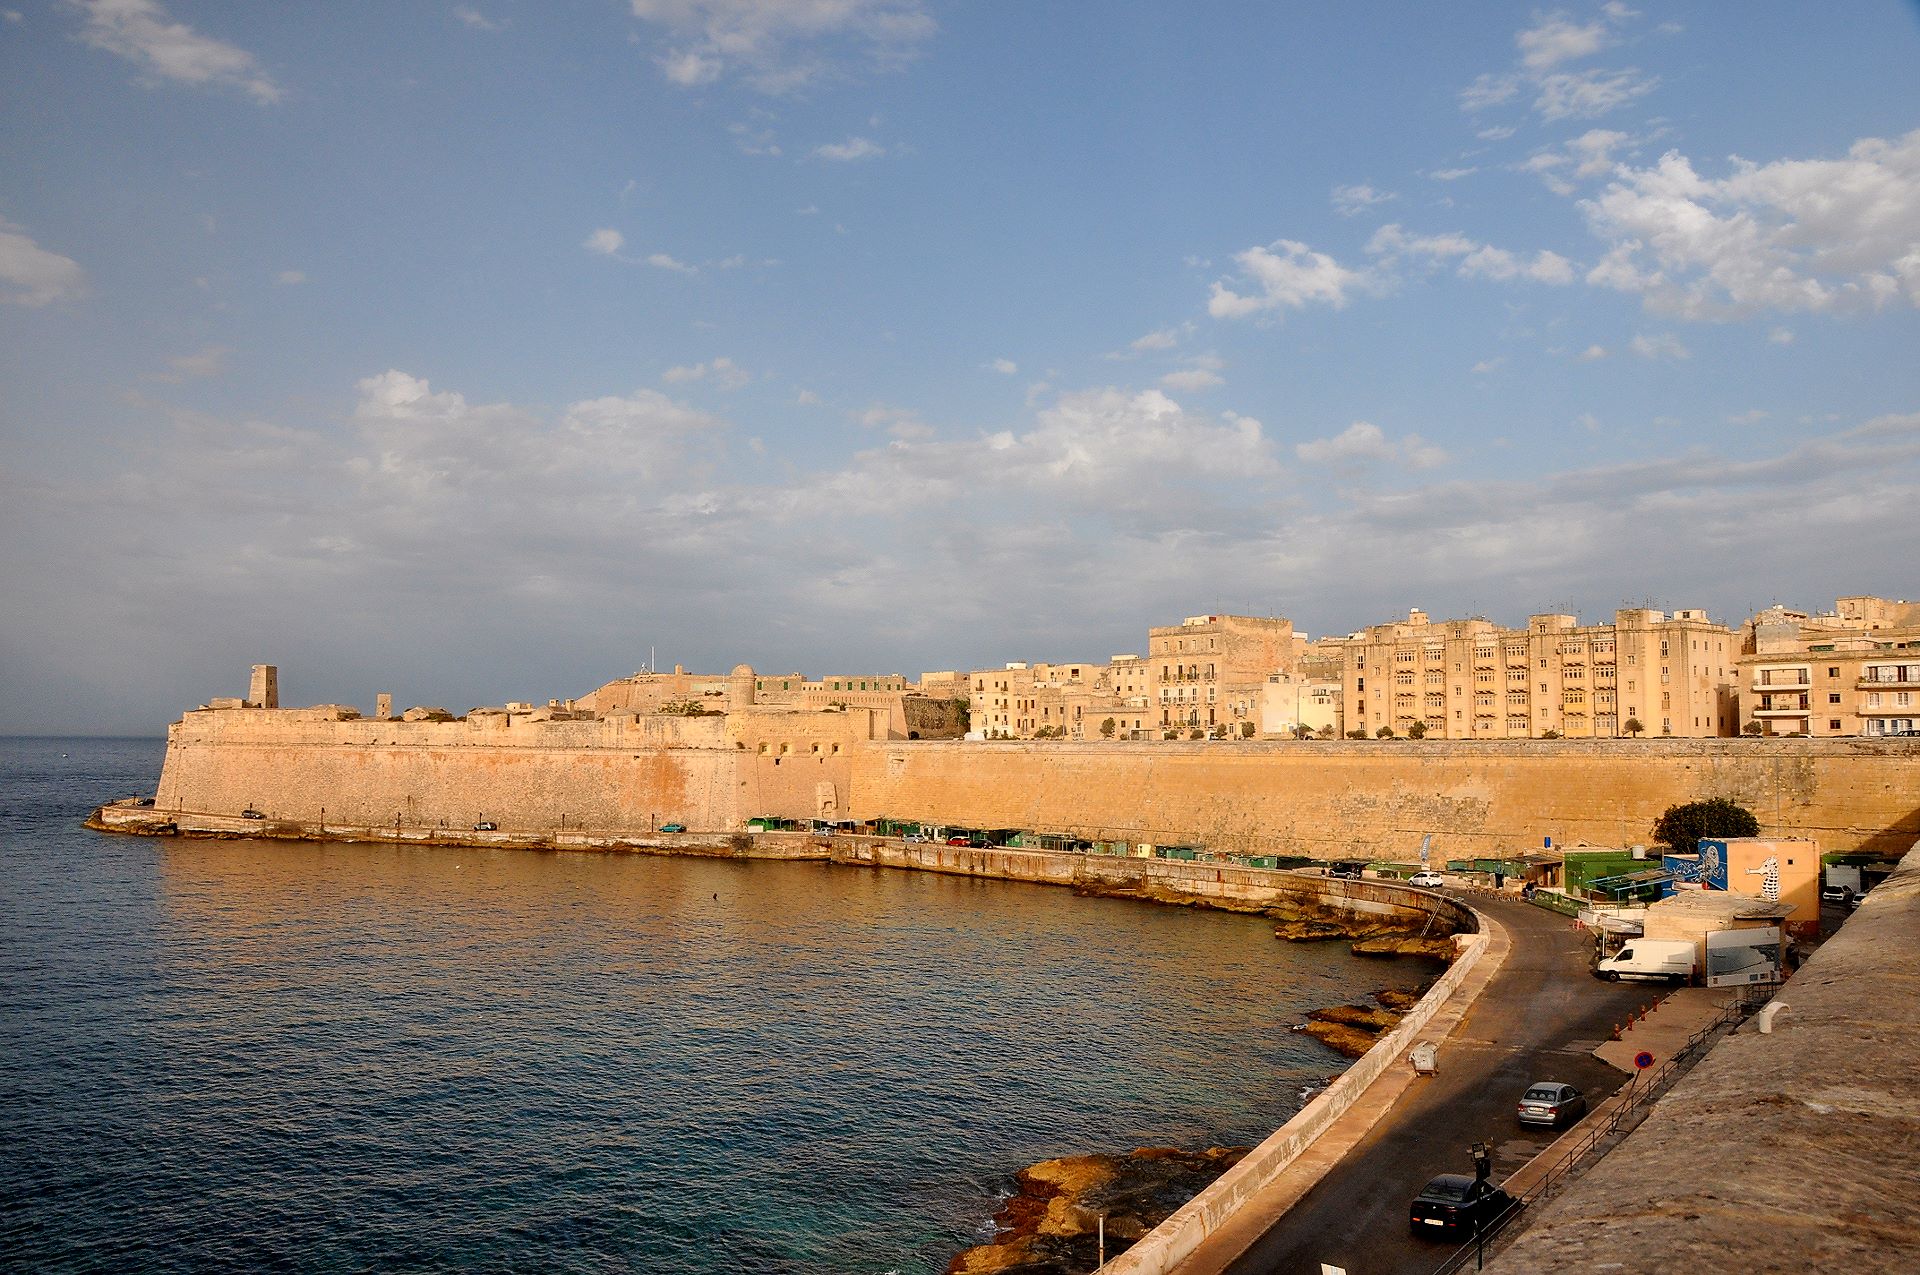 Massive Mauern umgeben Valletta